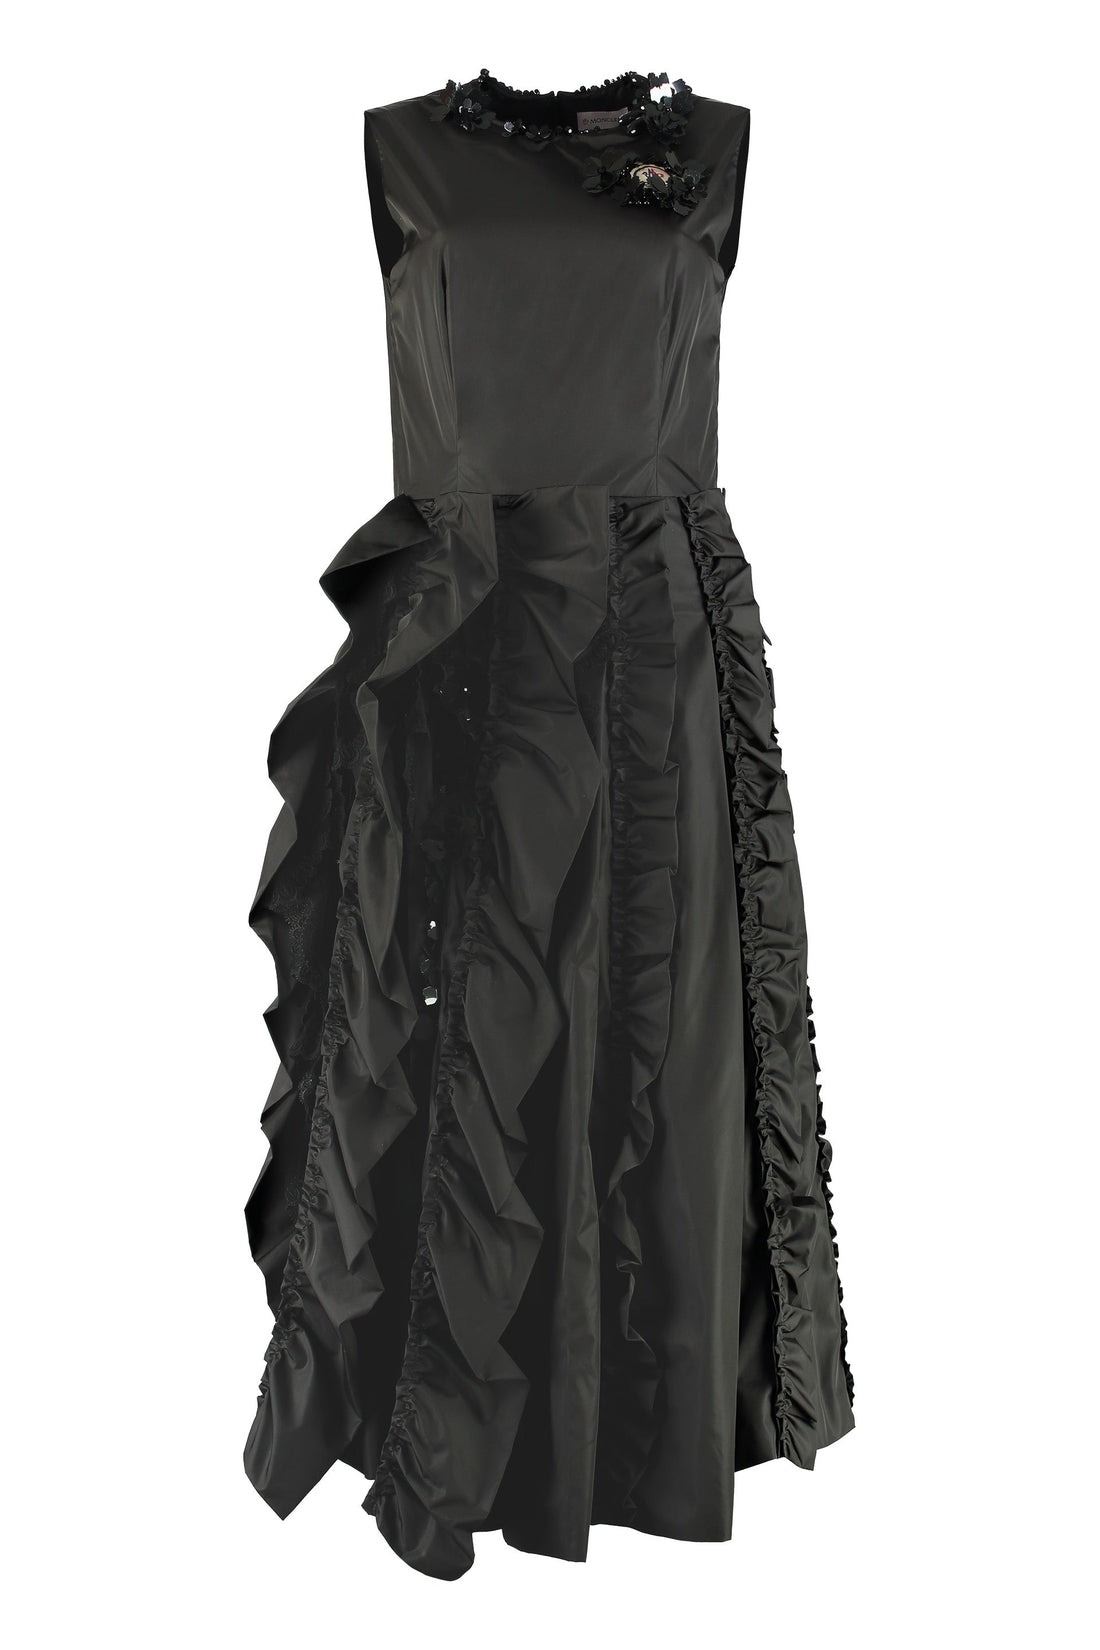 Moncler-OUTLET-SALE-Technical nylon dress-ARCHIVIST